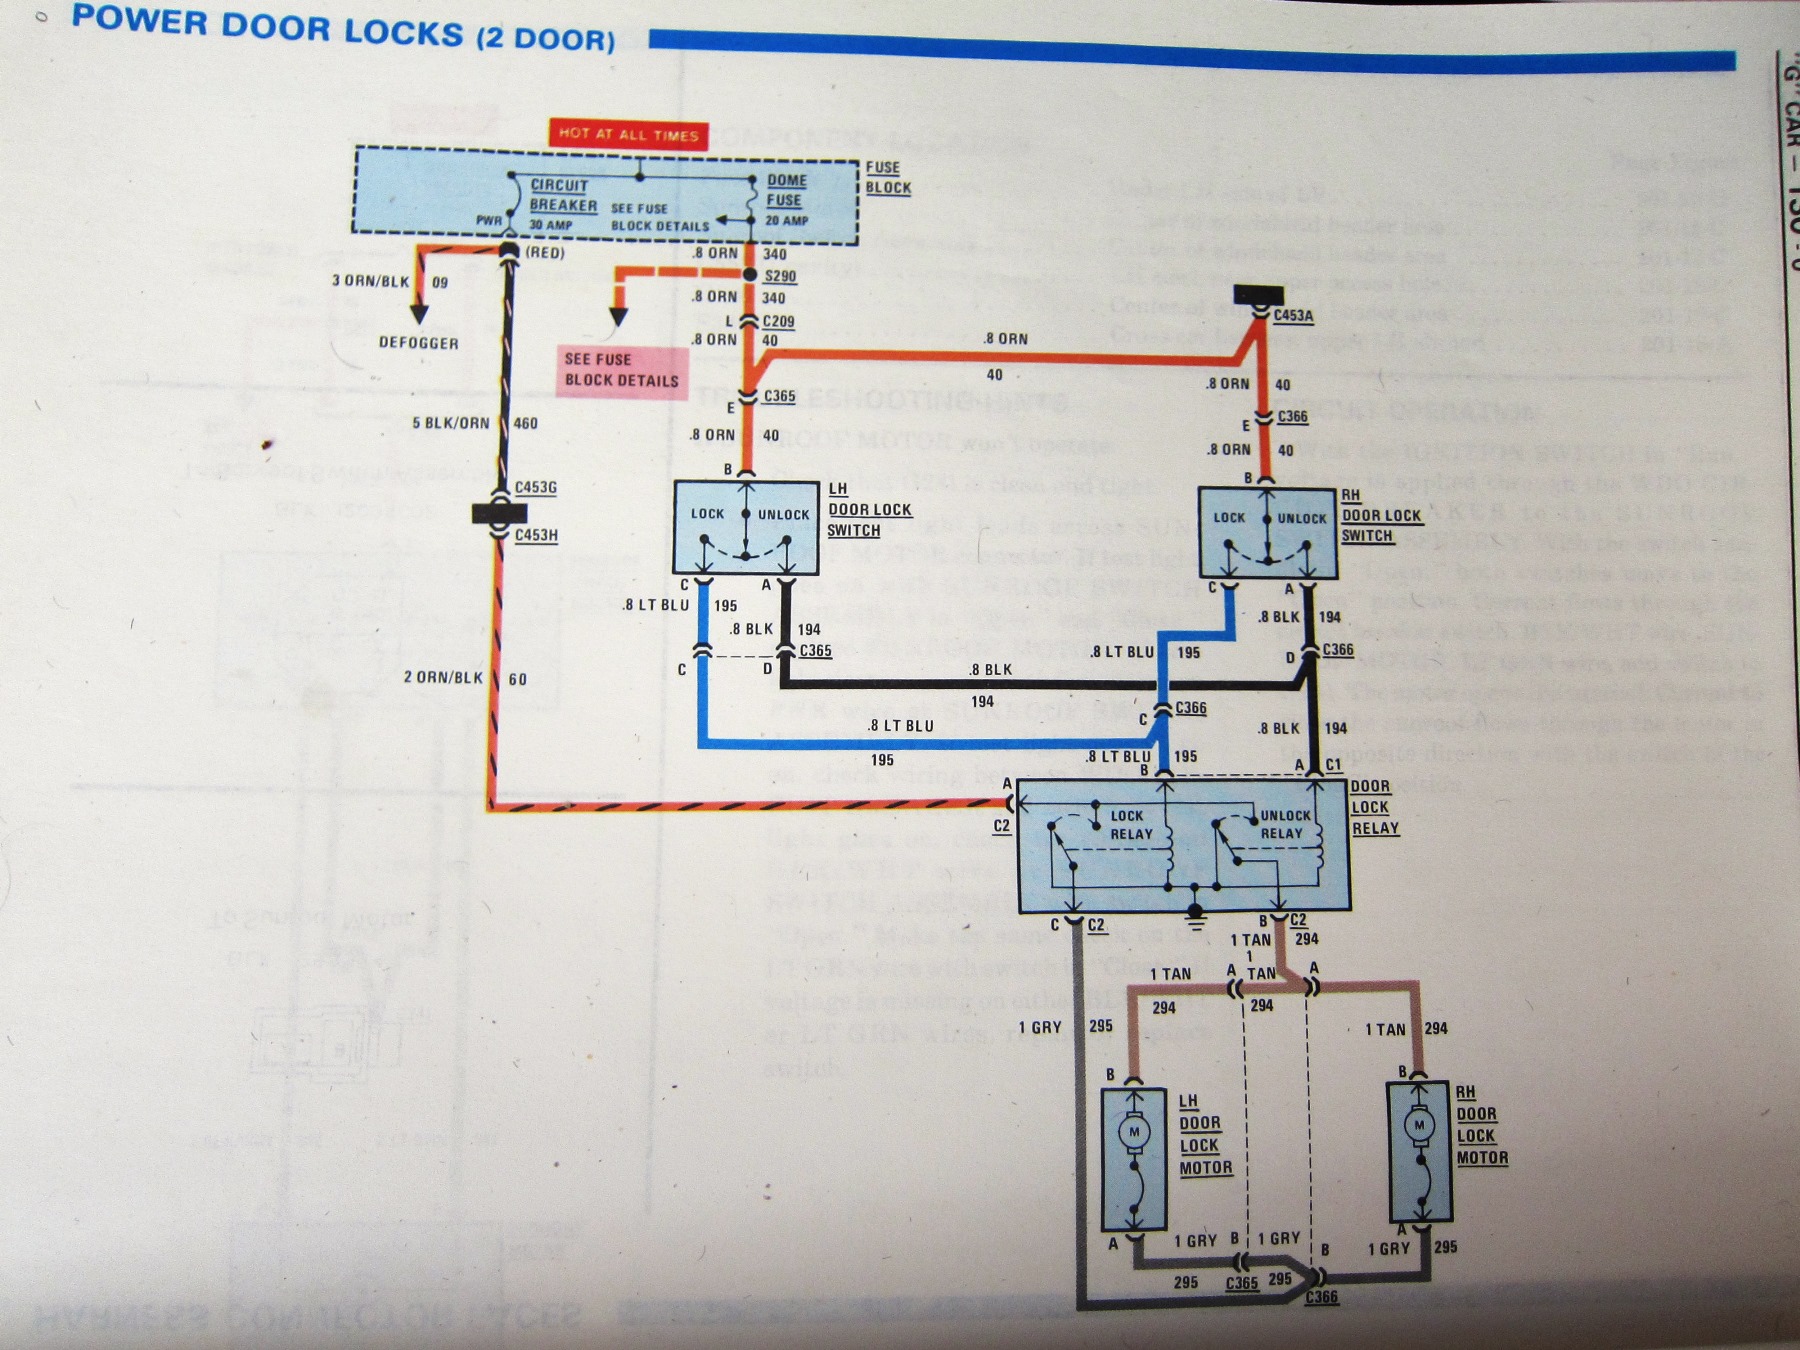 85 G47 power door lock diagram.JPG